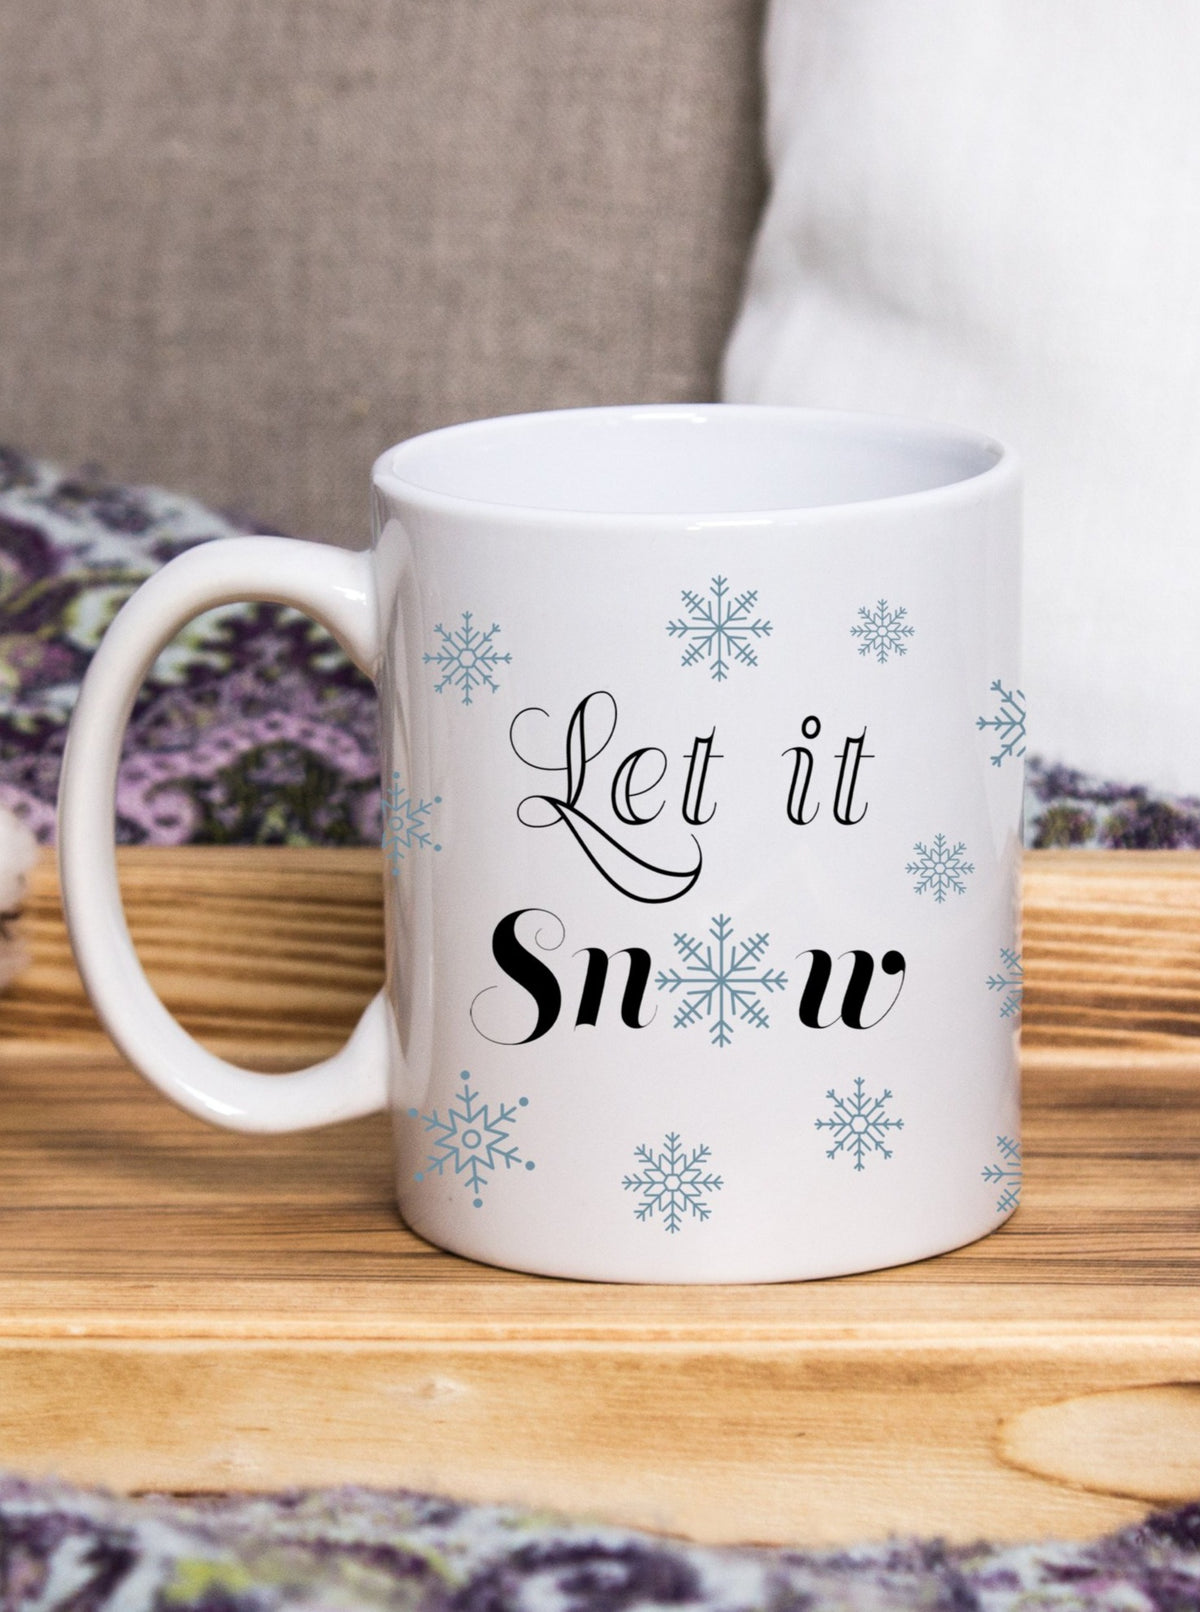 let it snow coffee mug,  snowflake coffee mug, winter mug